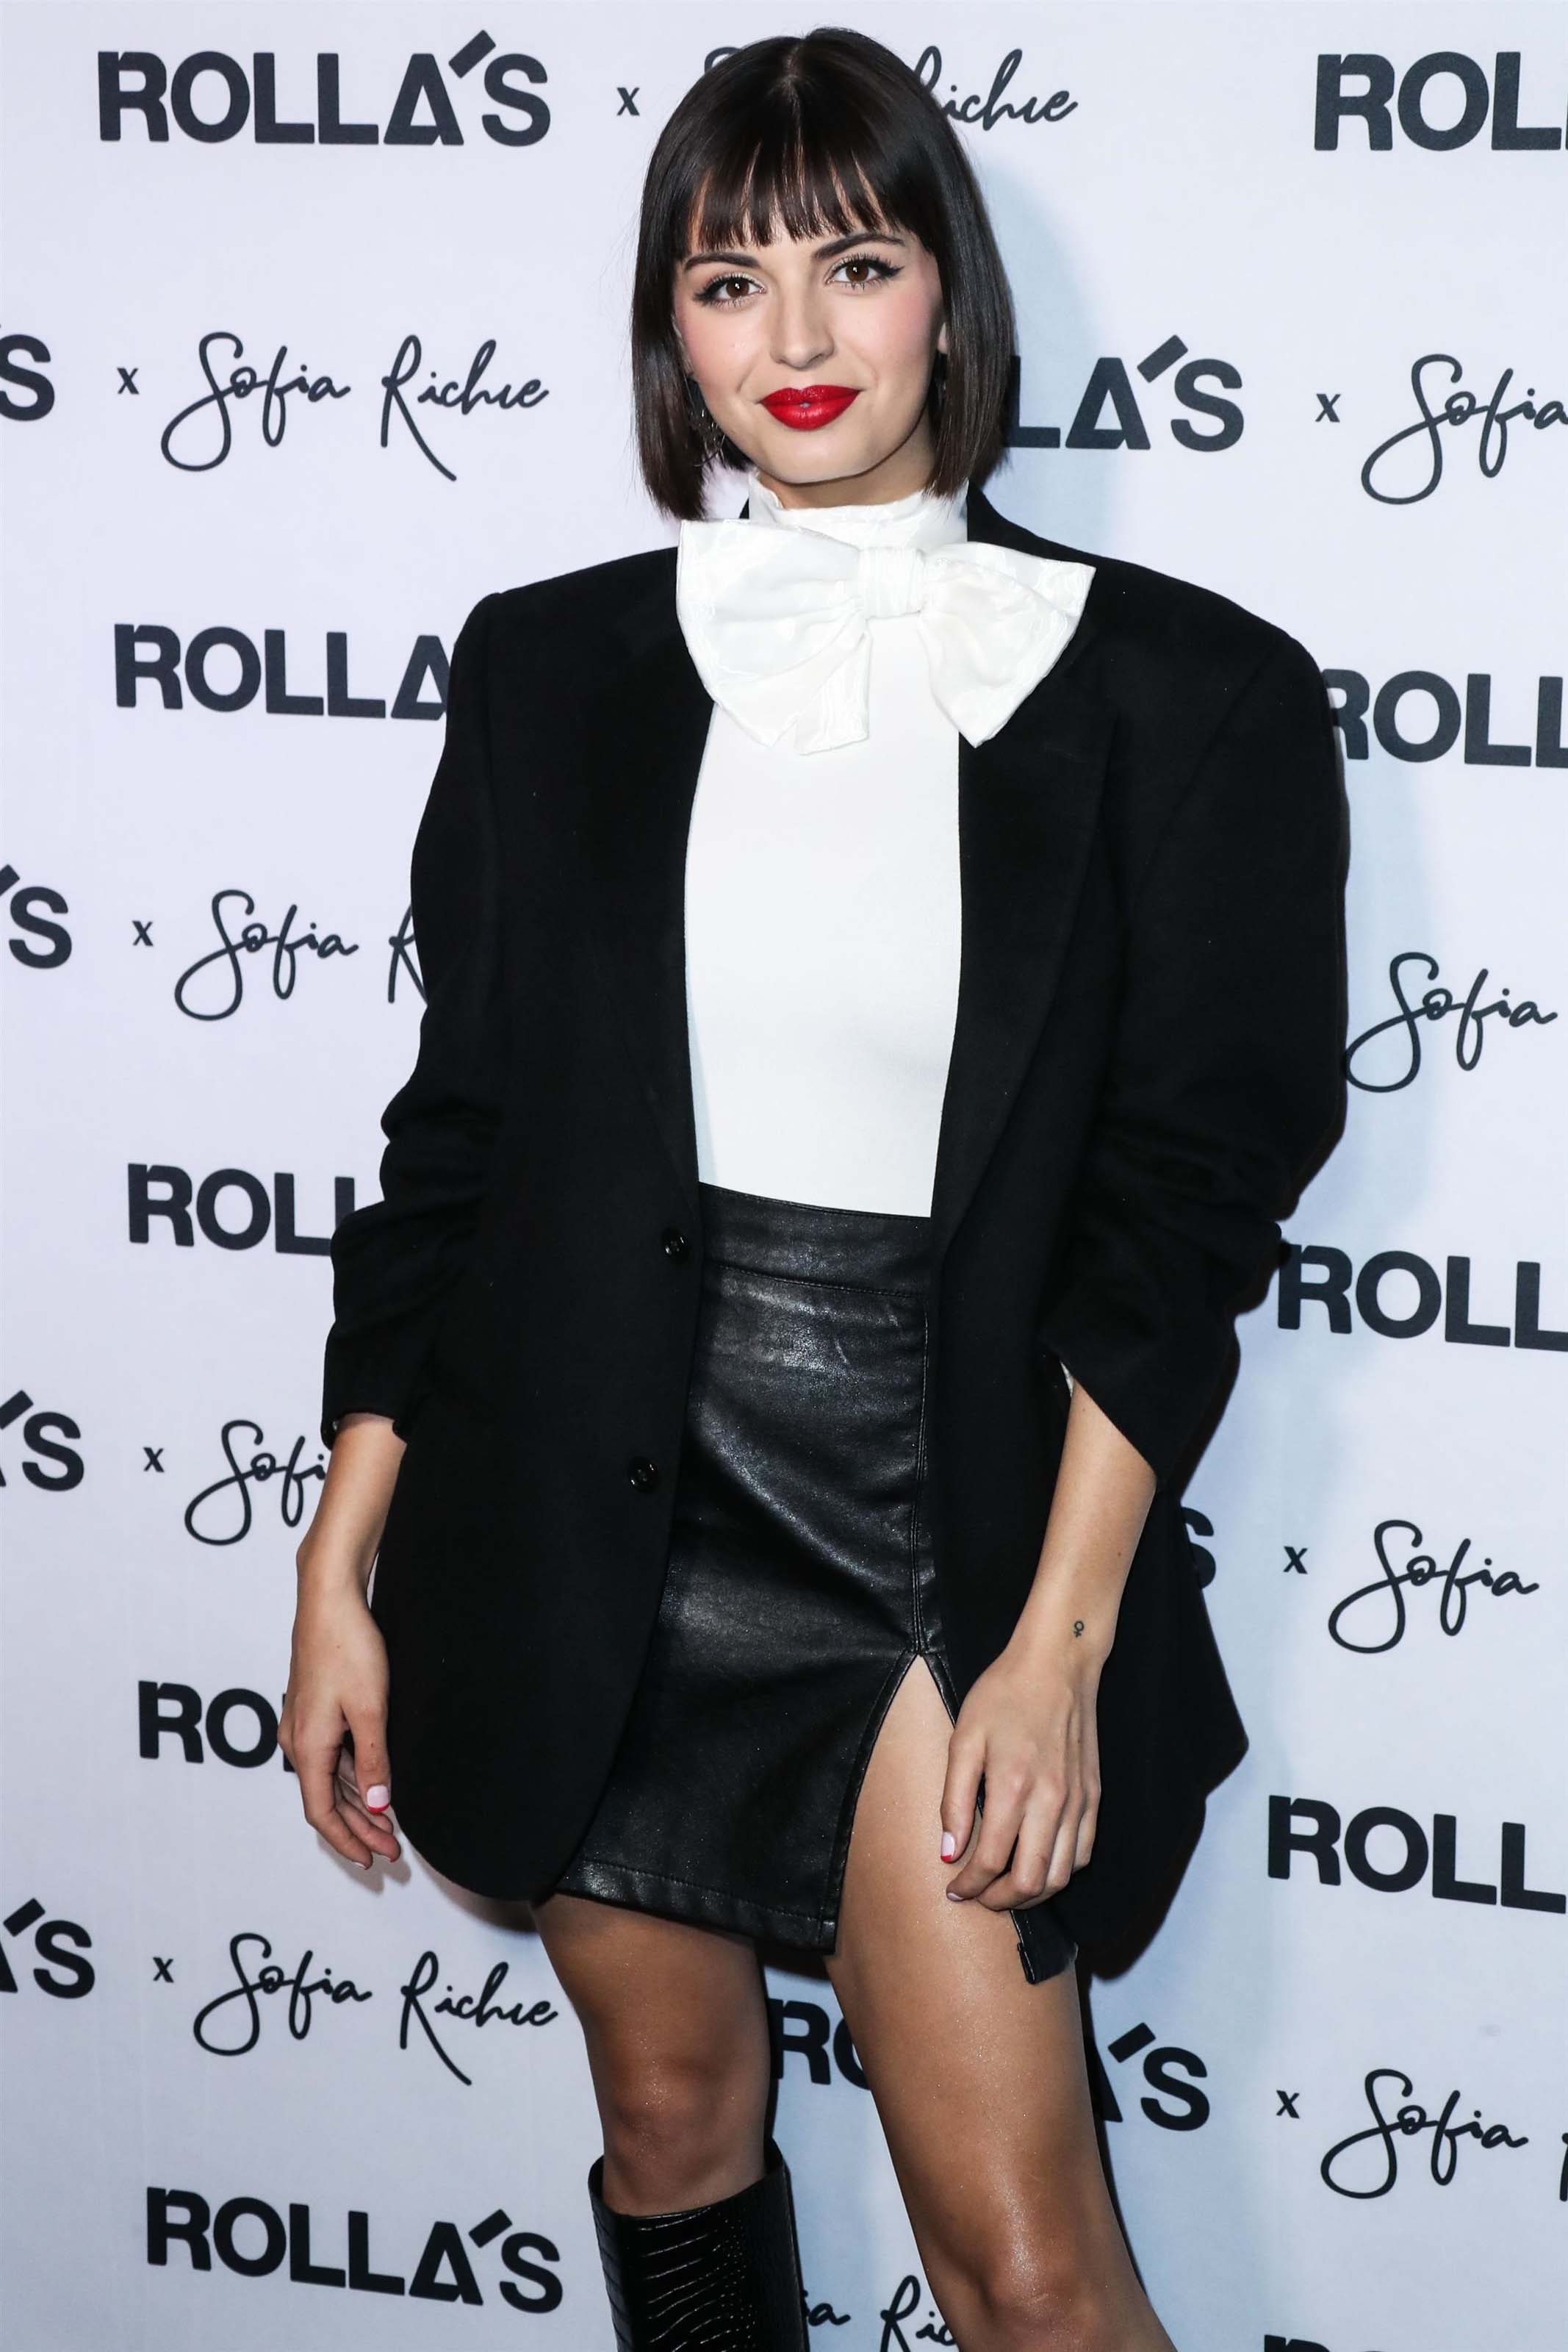 Rebecca Black attends Rolla’s x Sofia Richie collection launch event